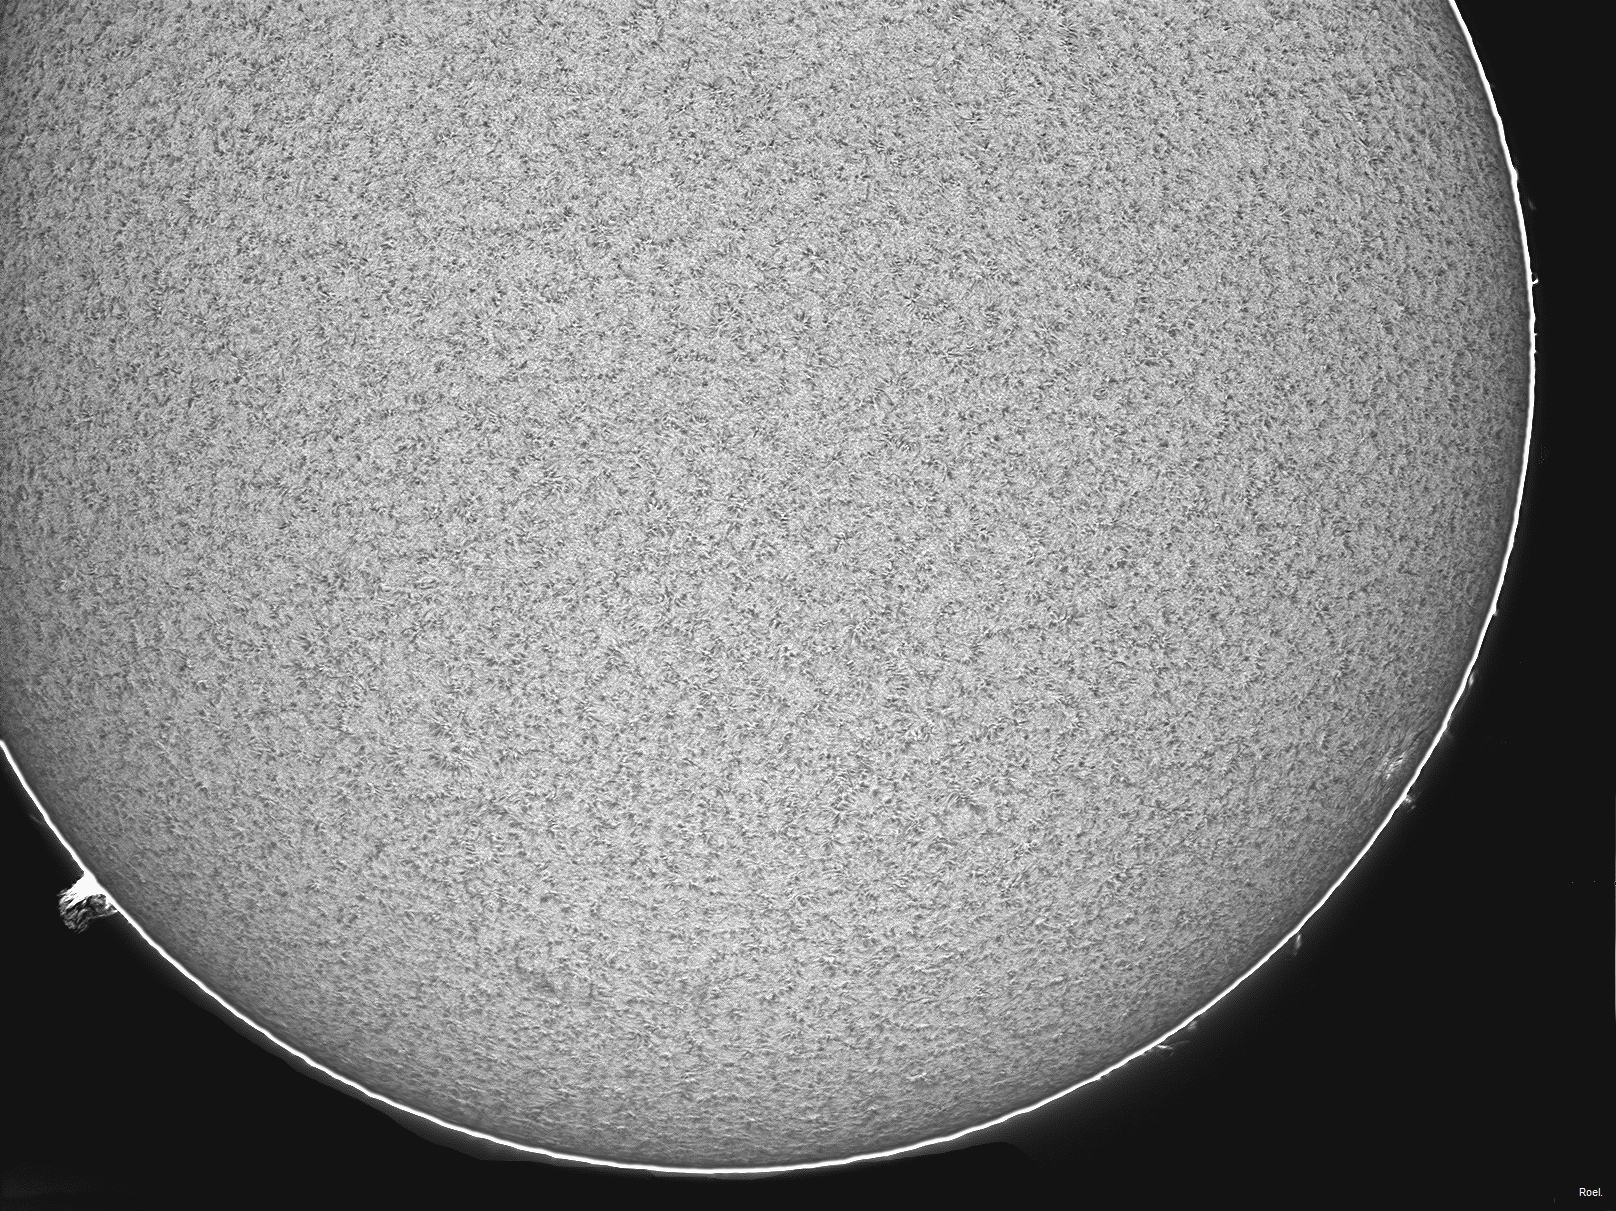 Sol del 28 de junio del 2020-Solarmax 90-DS-BF30-NF-4pos.jpg